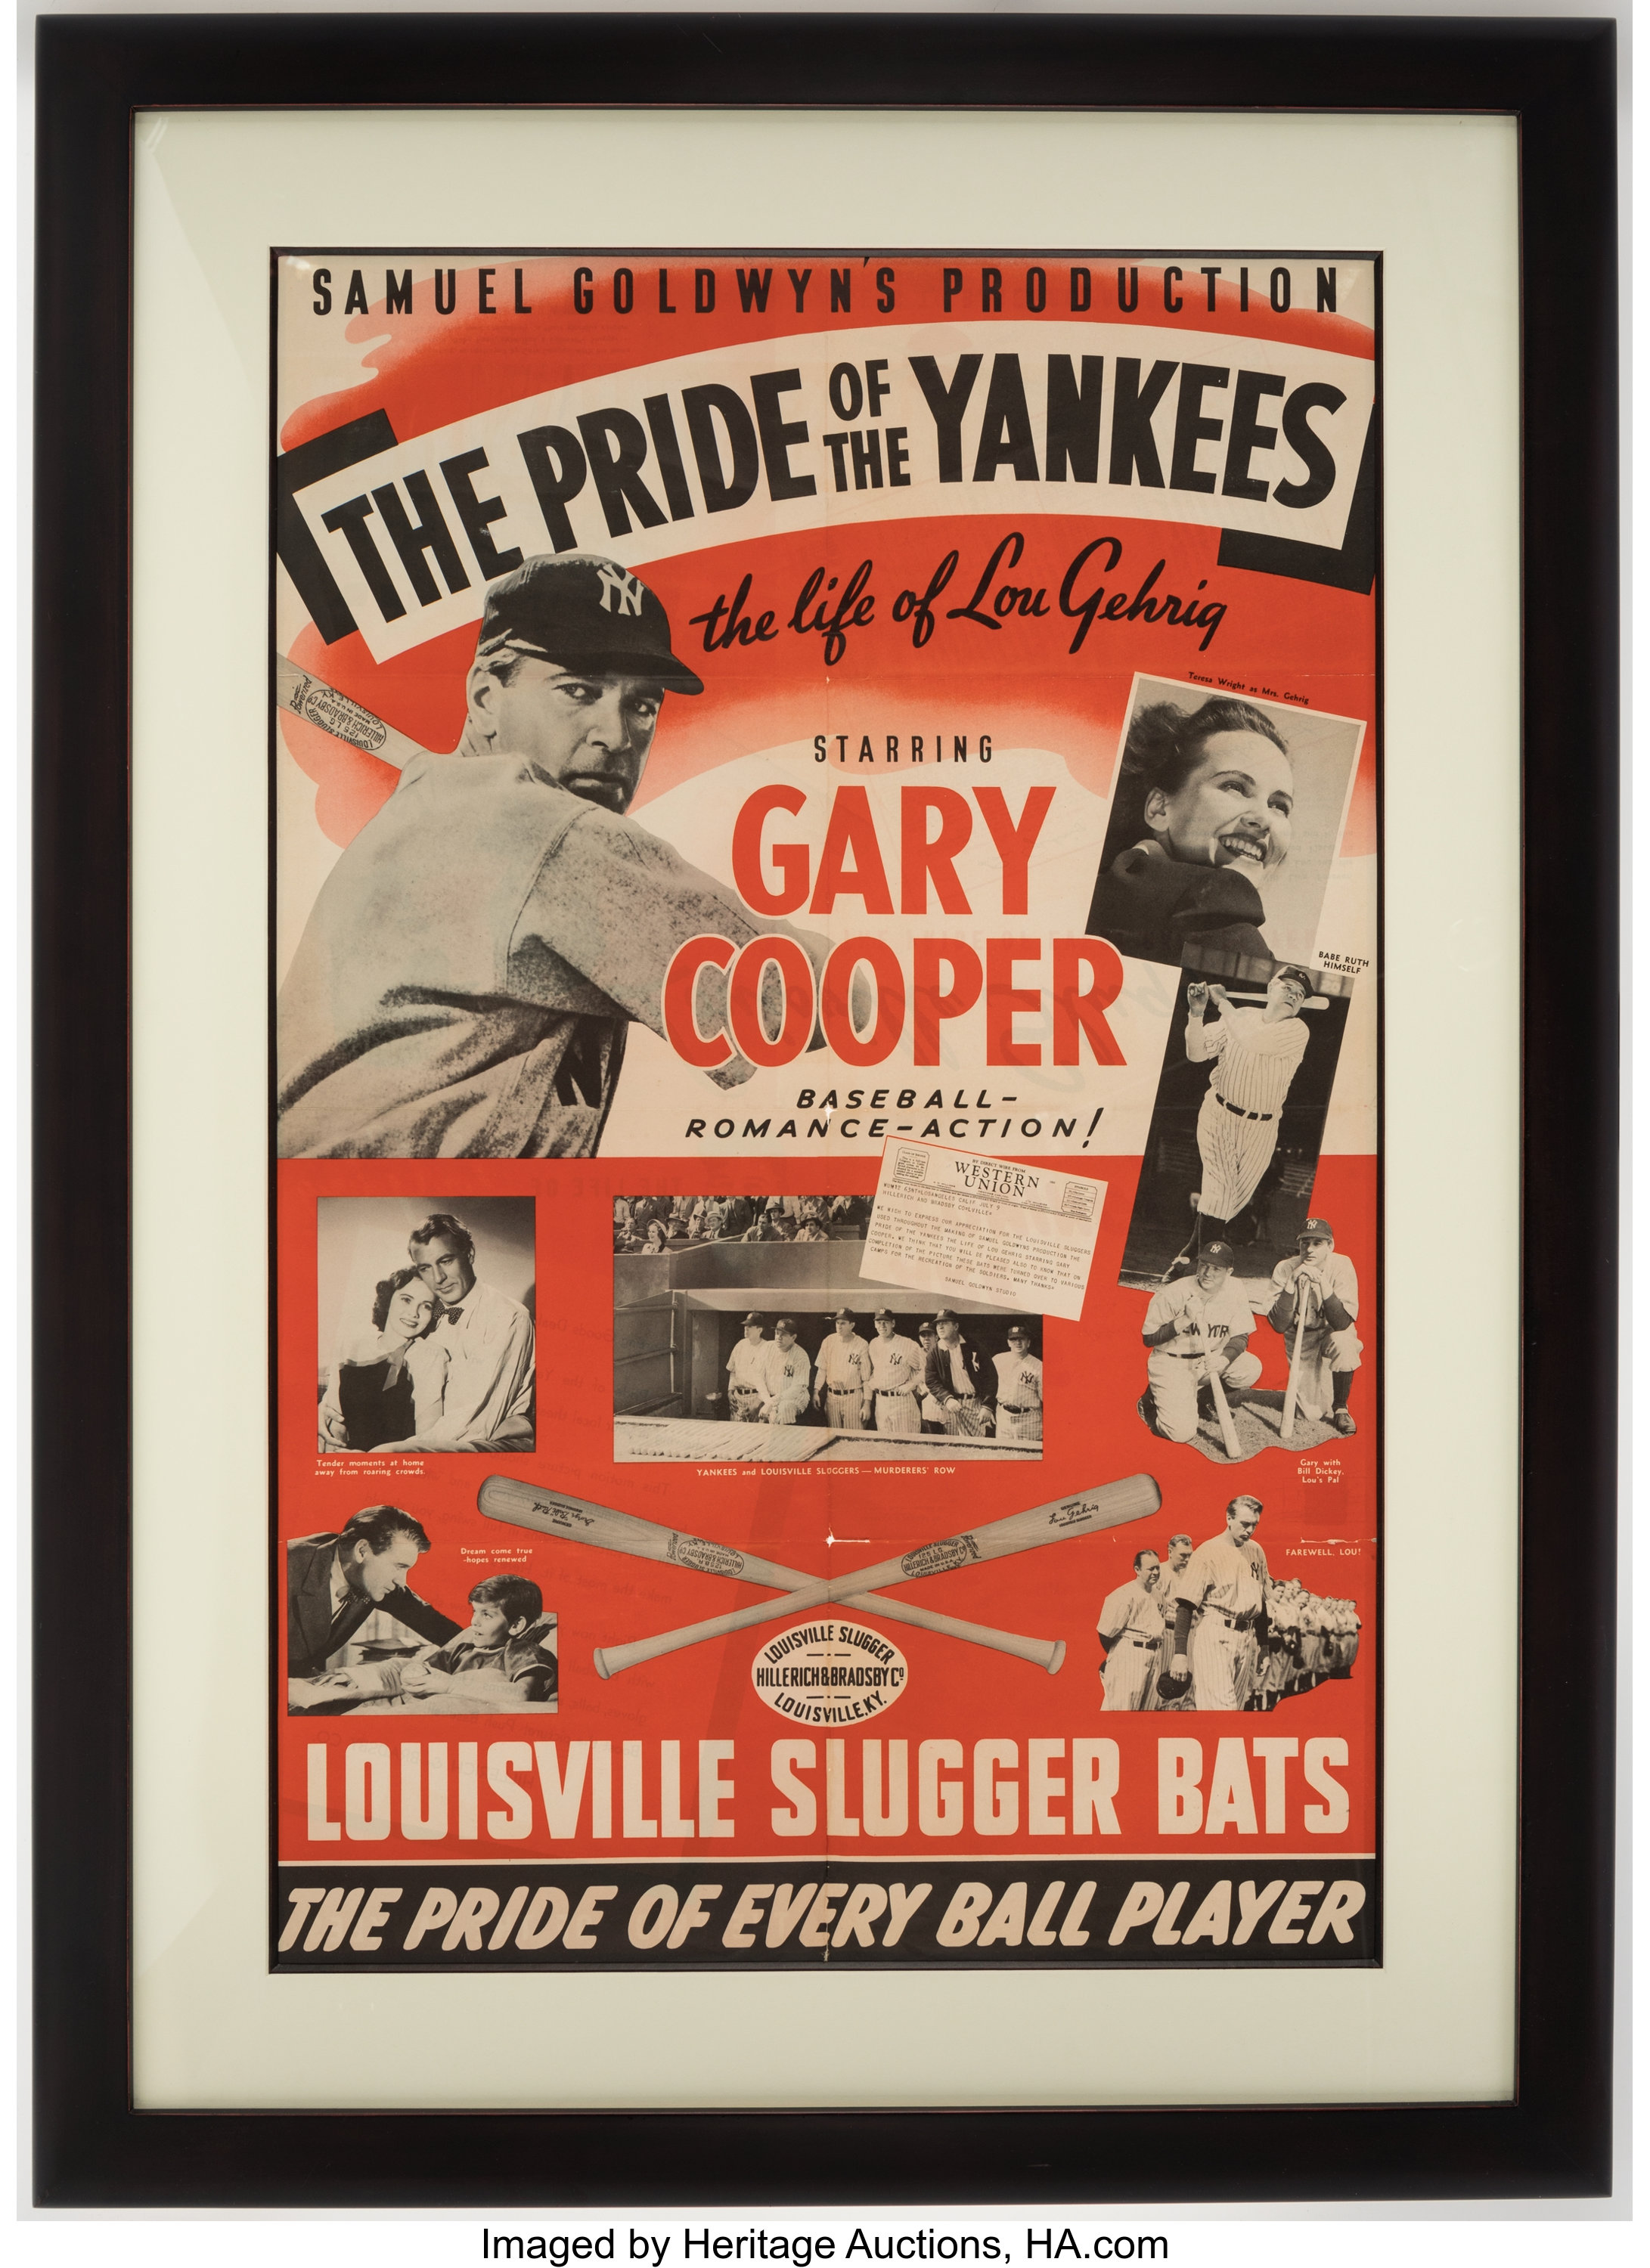 New (Sealed) Vintage Lou Gehrig Pride of the Yankees Poster